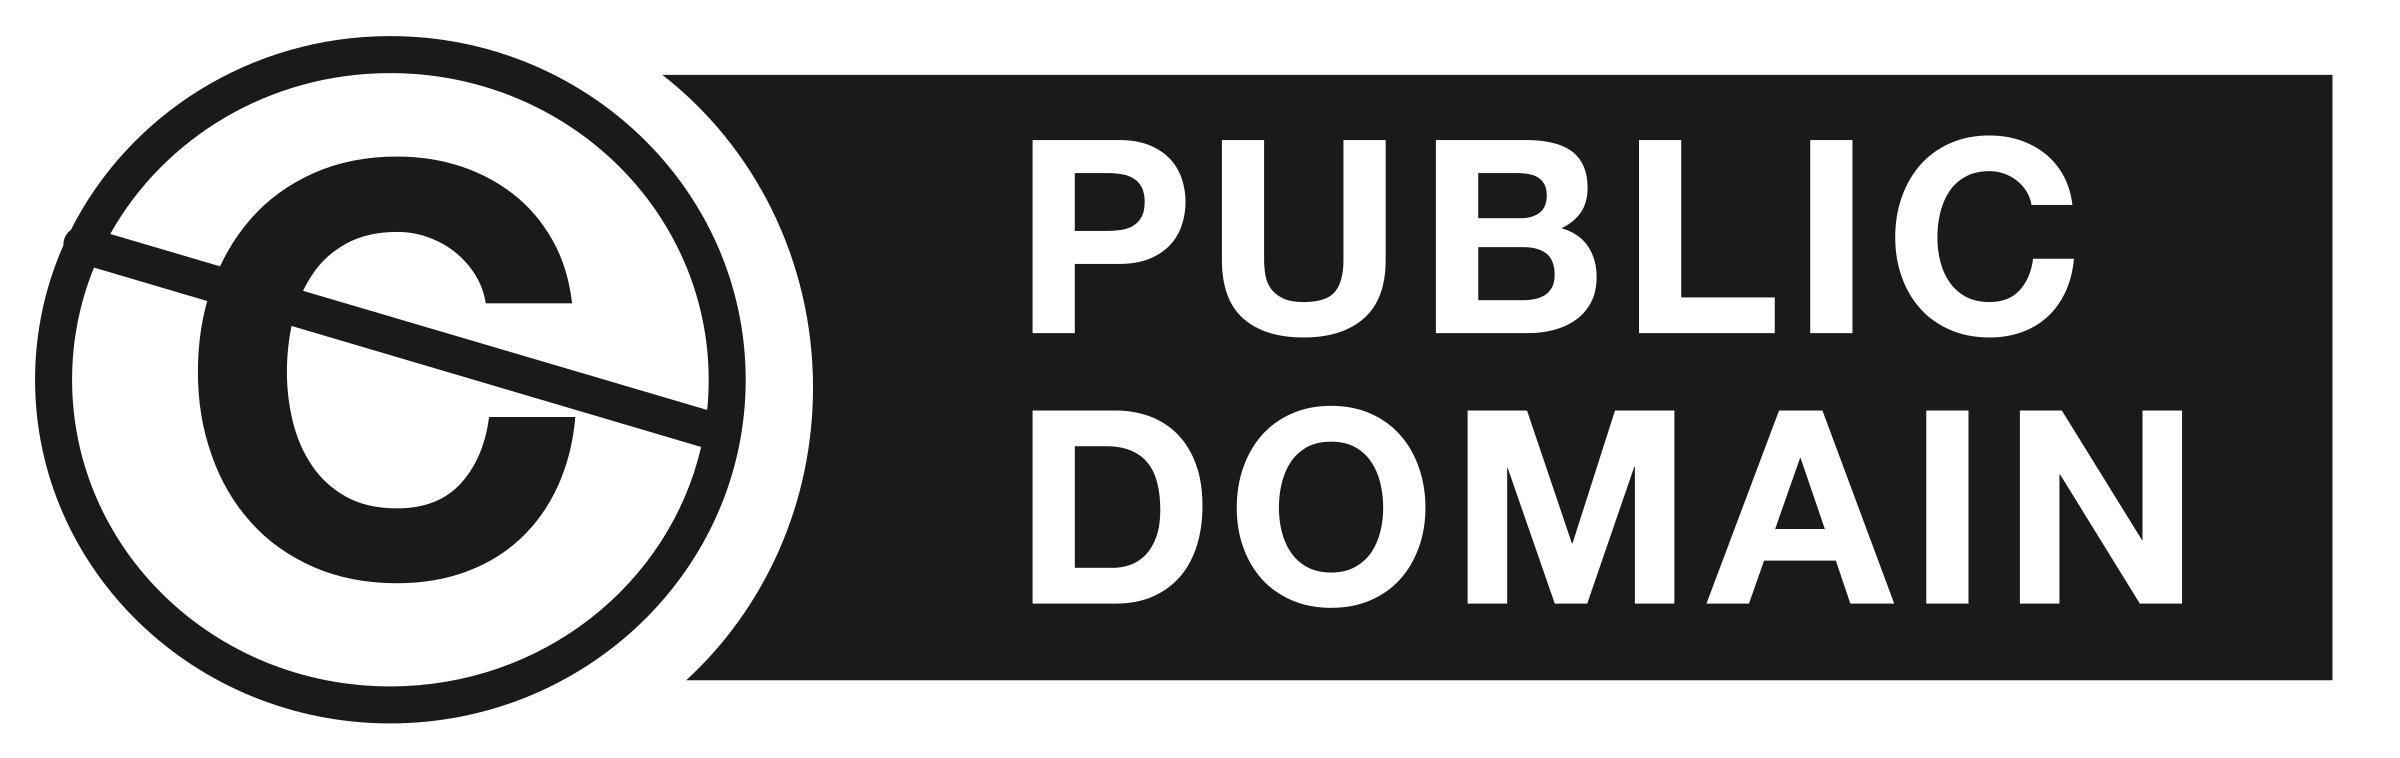 Public domain logo png